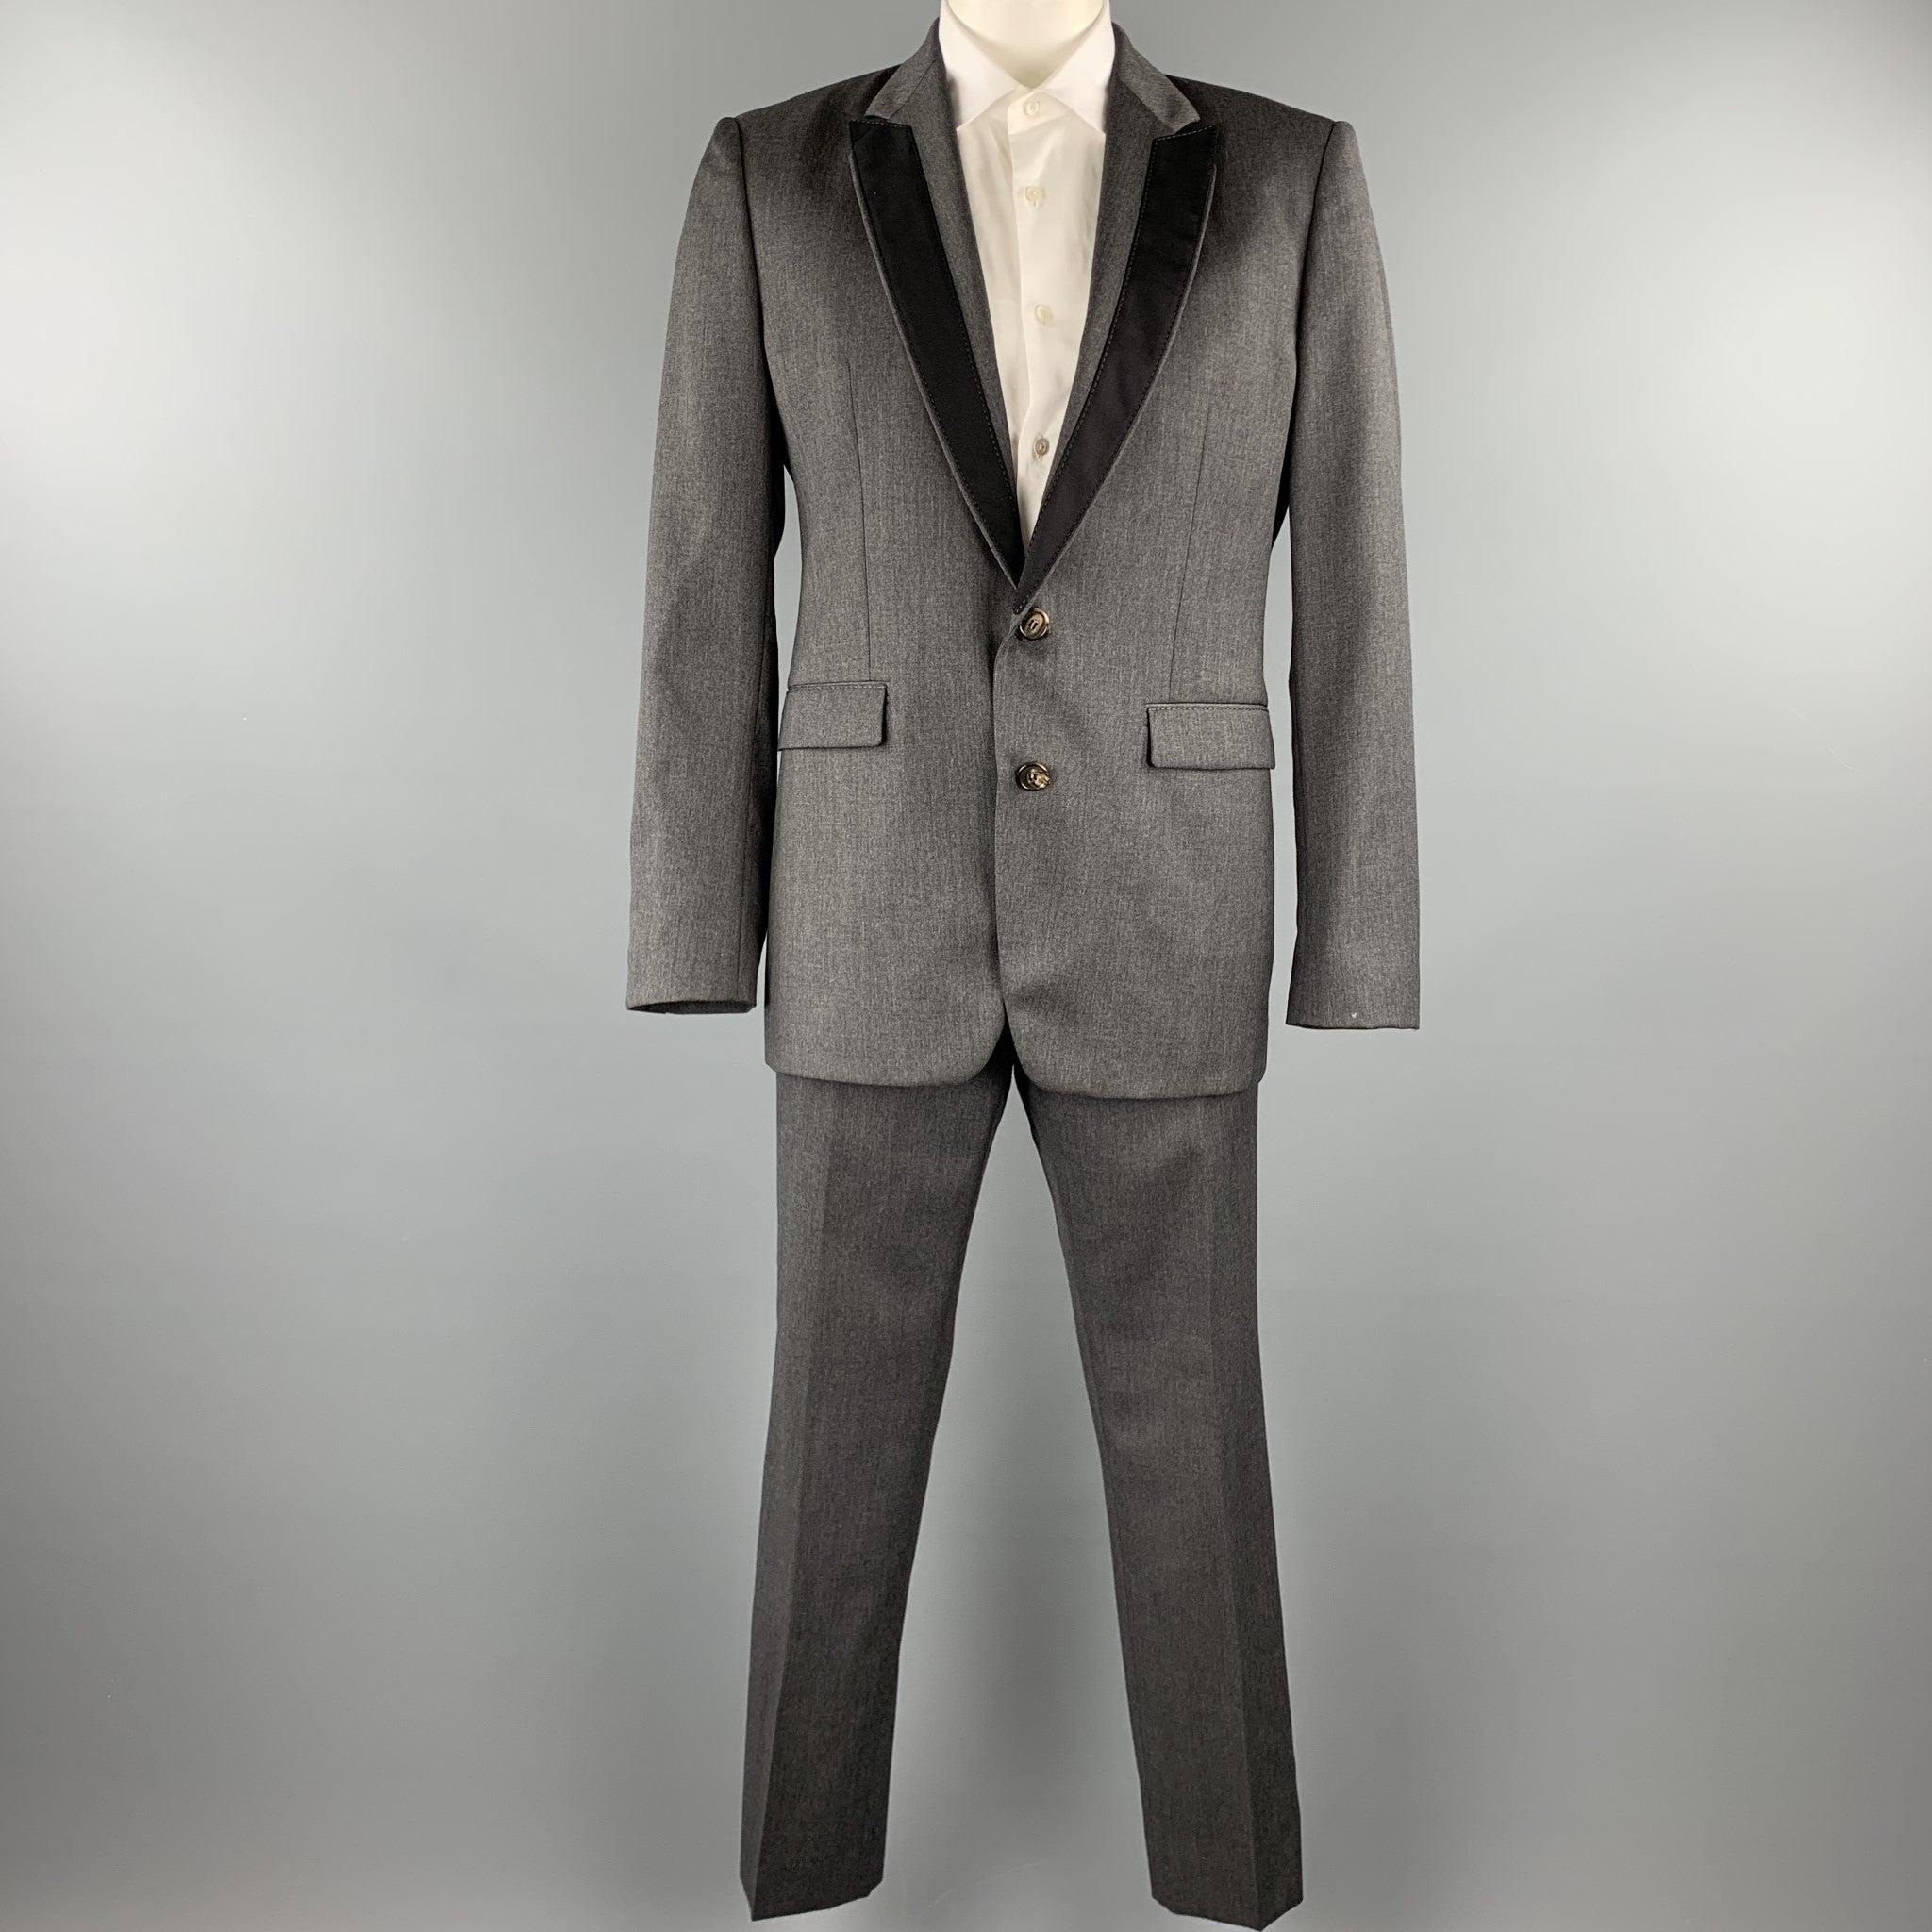 Le costume VIKTOR & ROLF est en laine gris foncé et comprend un manteau de sport à un seul boutonnage, avec un revers en pointe et des bordures noires, ainsi qu'un pantalon de devant assorti. Fabriqué en Italie. Excellent état. 

Marqué :   52